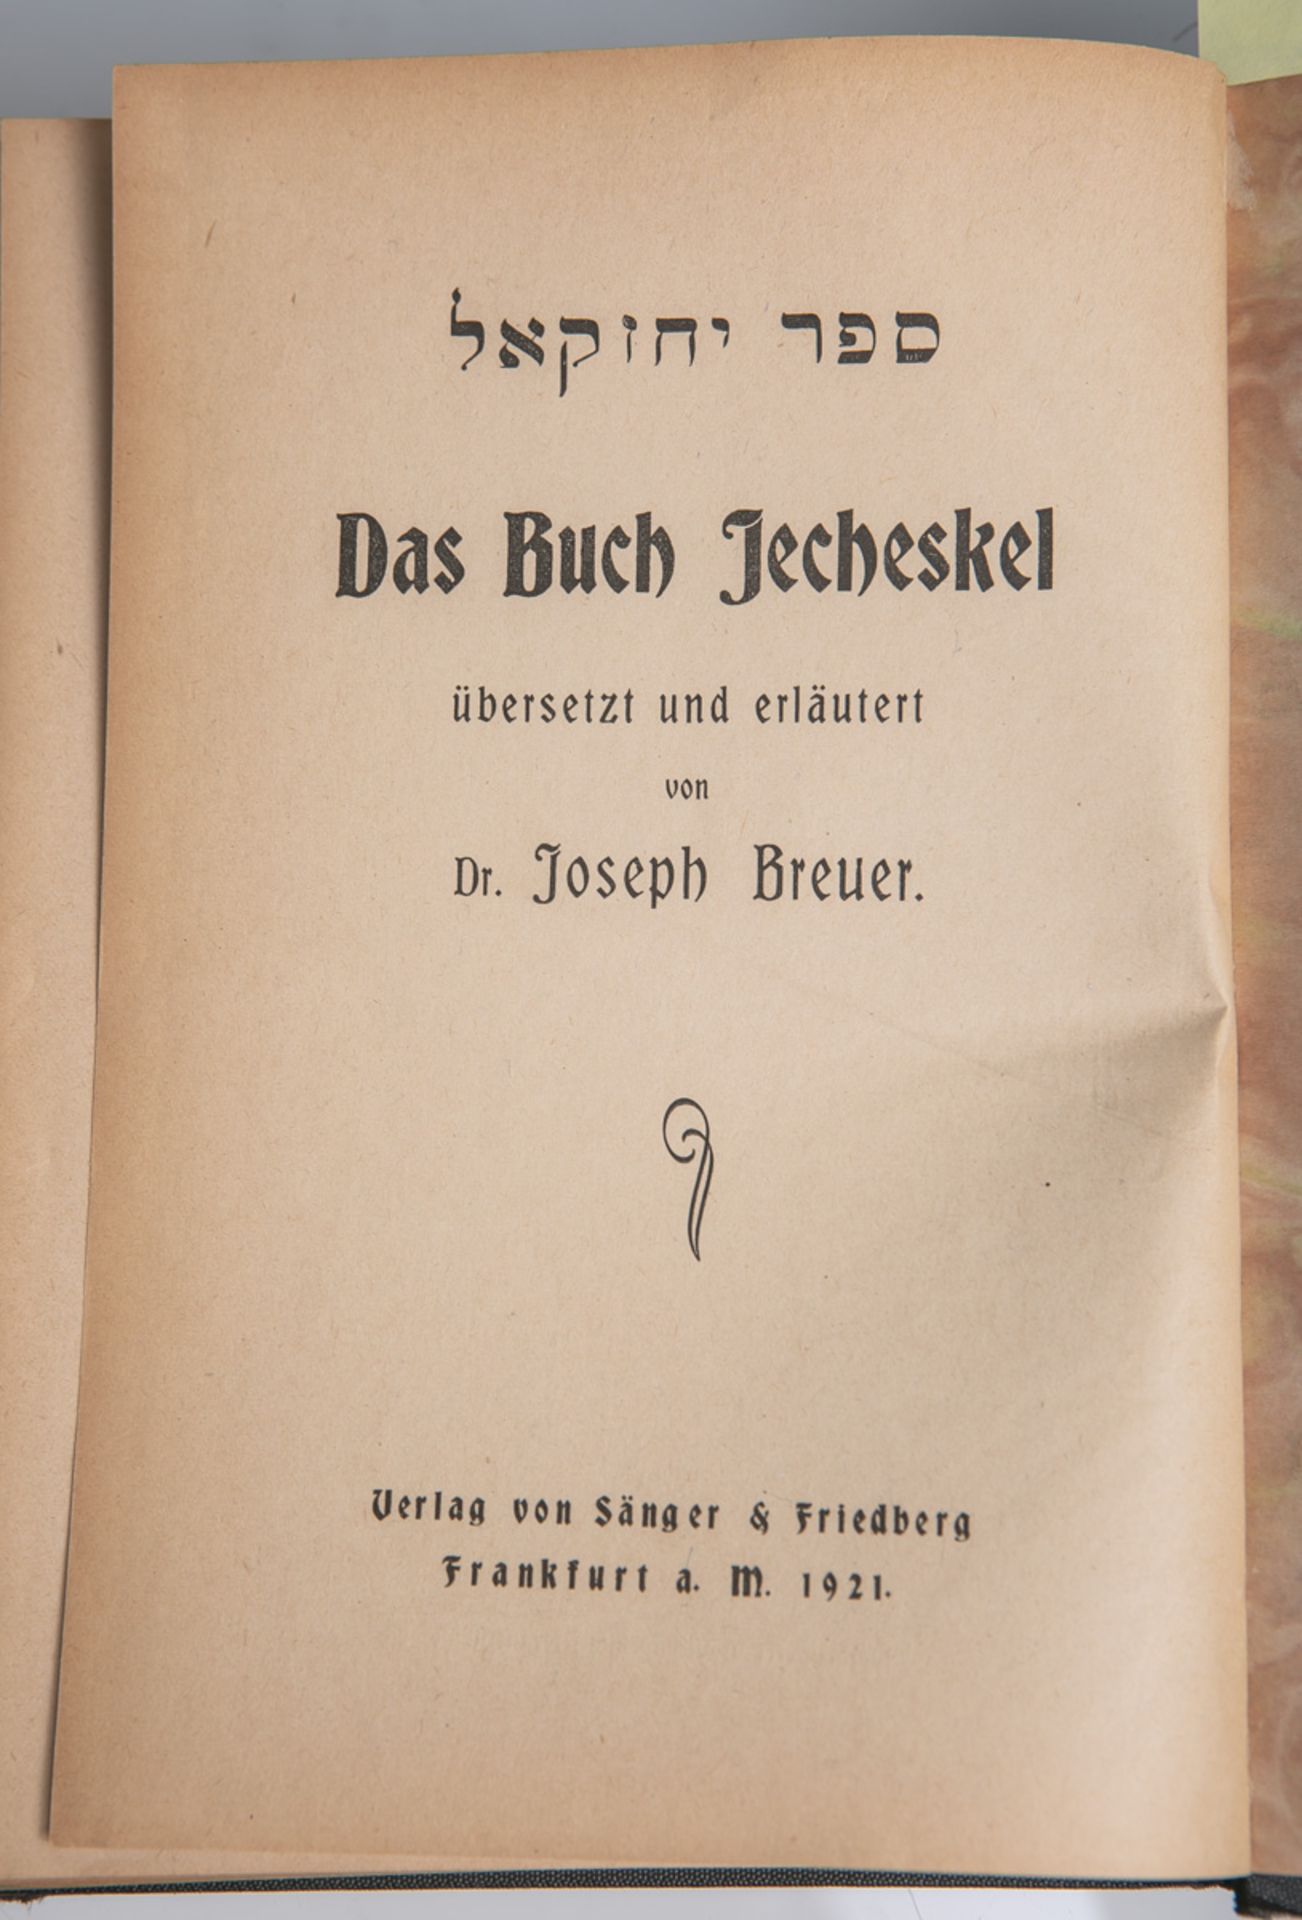 "Das Buch Jecheskel", übers. u. erläutert von Dr. Joseph Breuer